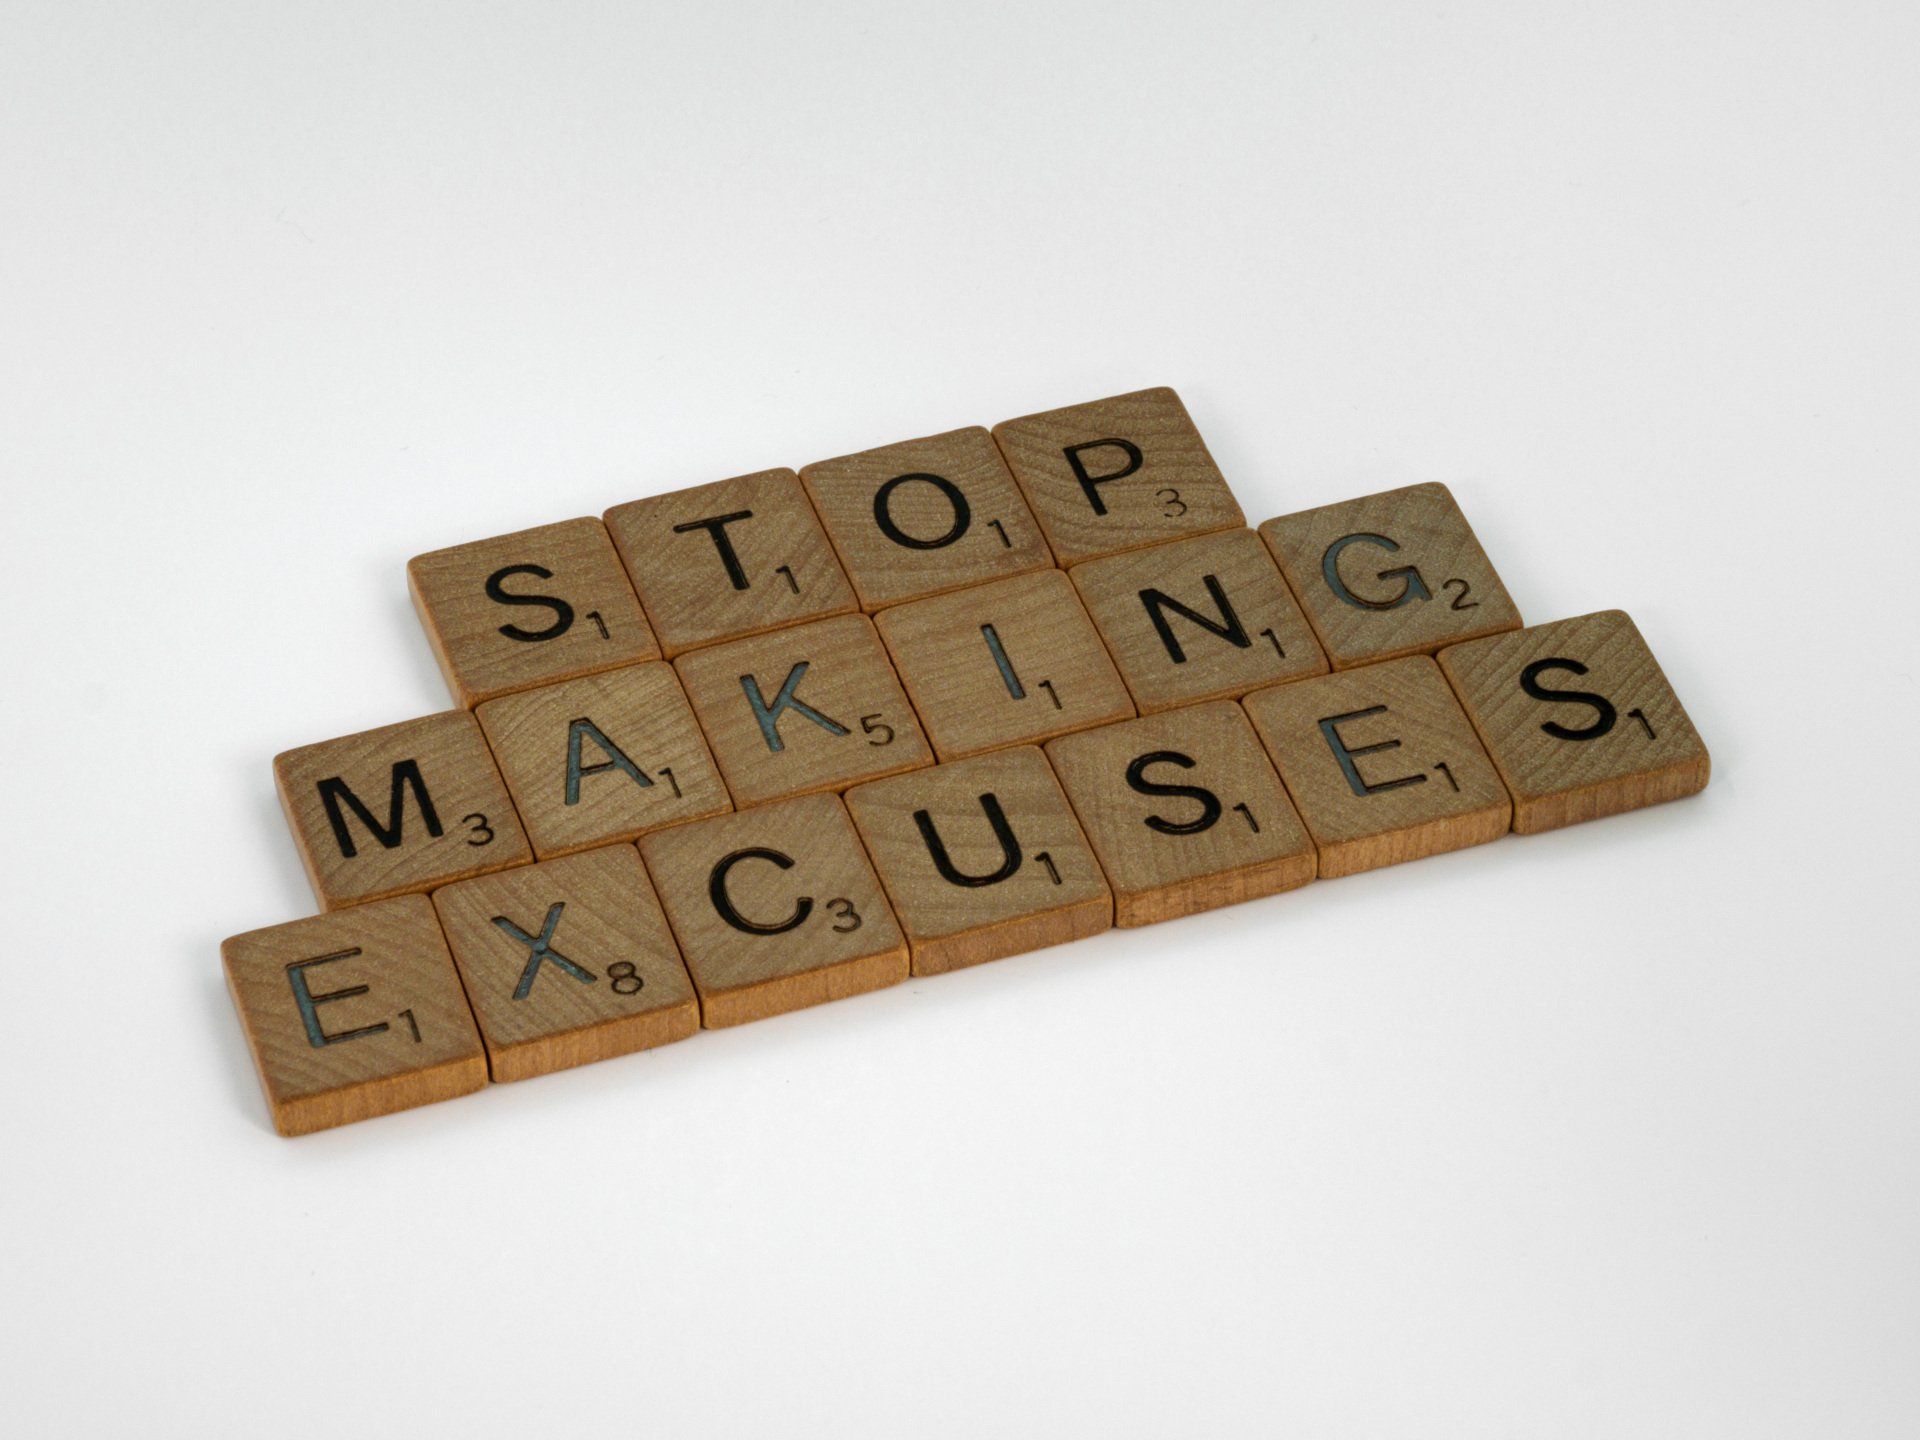 Scrabble letters vormen stop making excuses